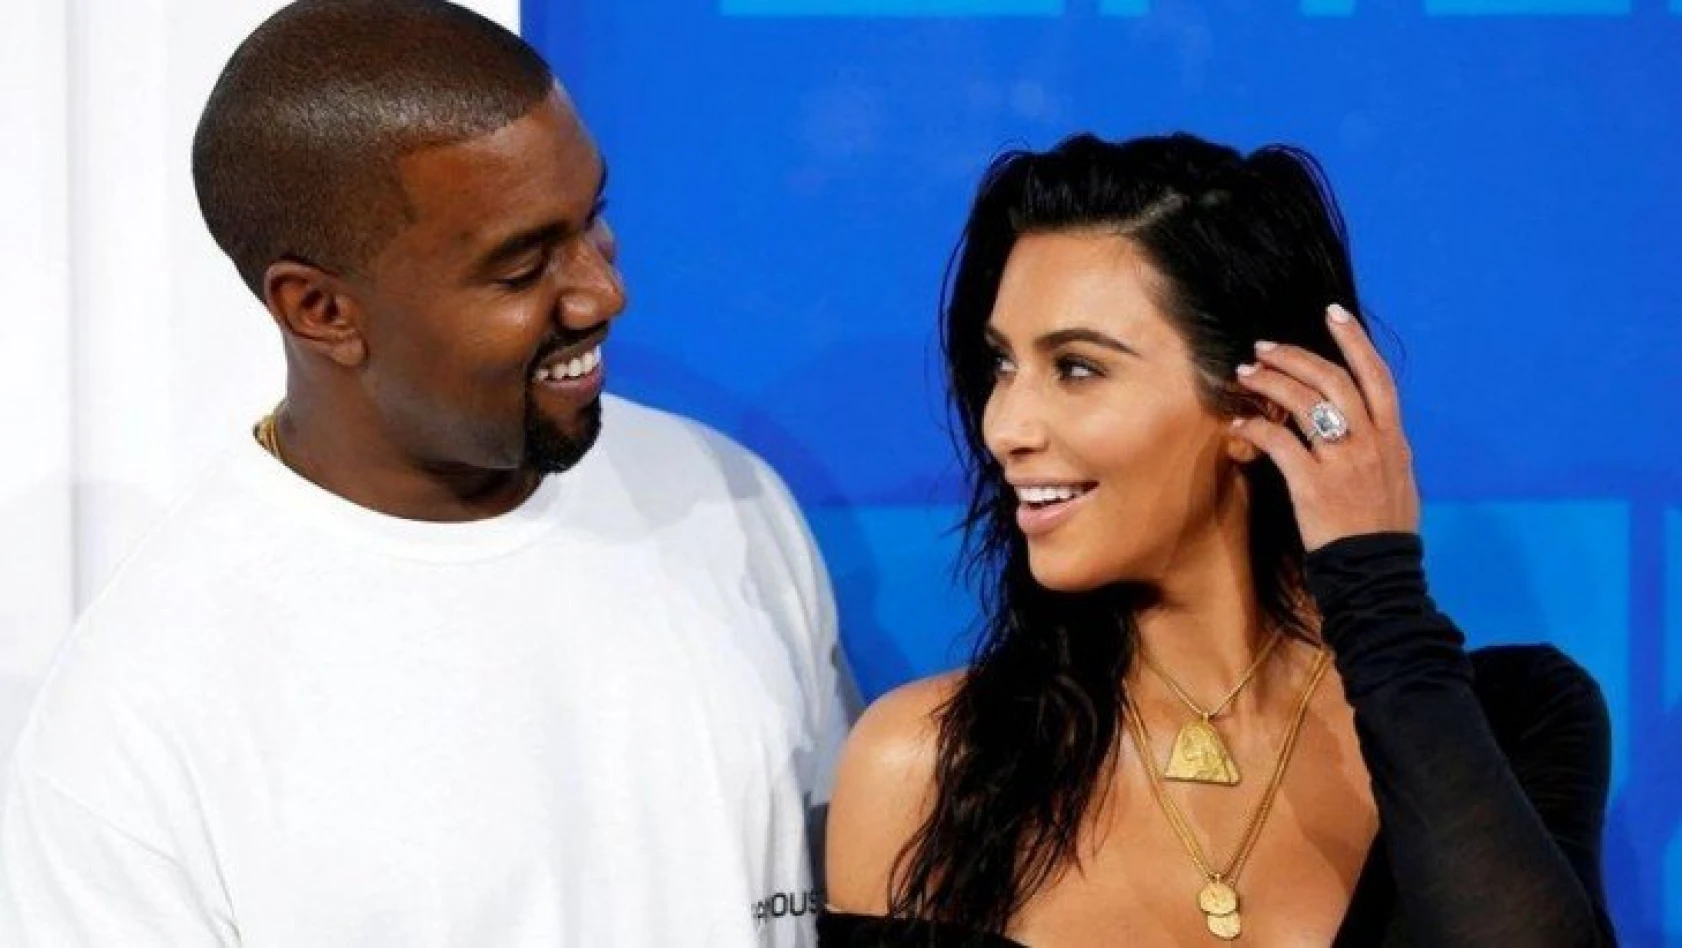 Kim Kardashian ve Kanye West boşanmayı askıya aldı